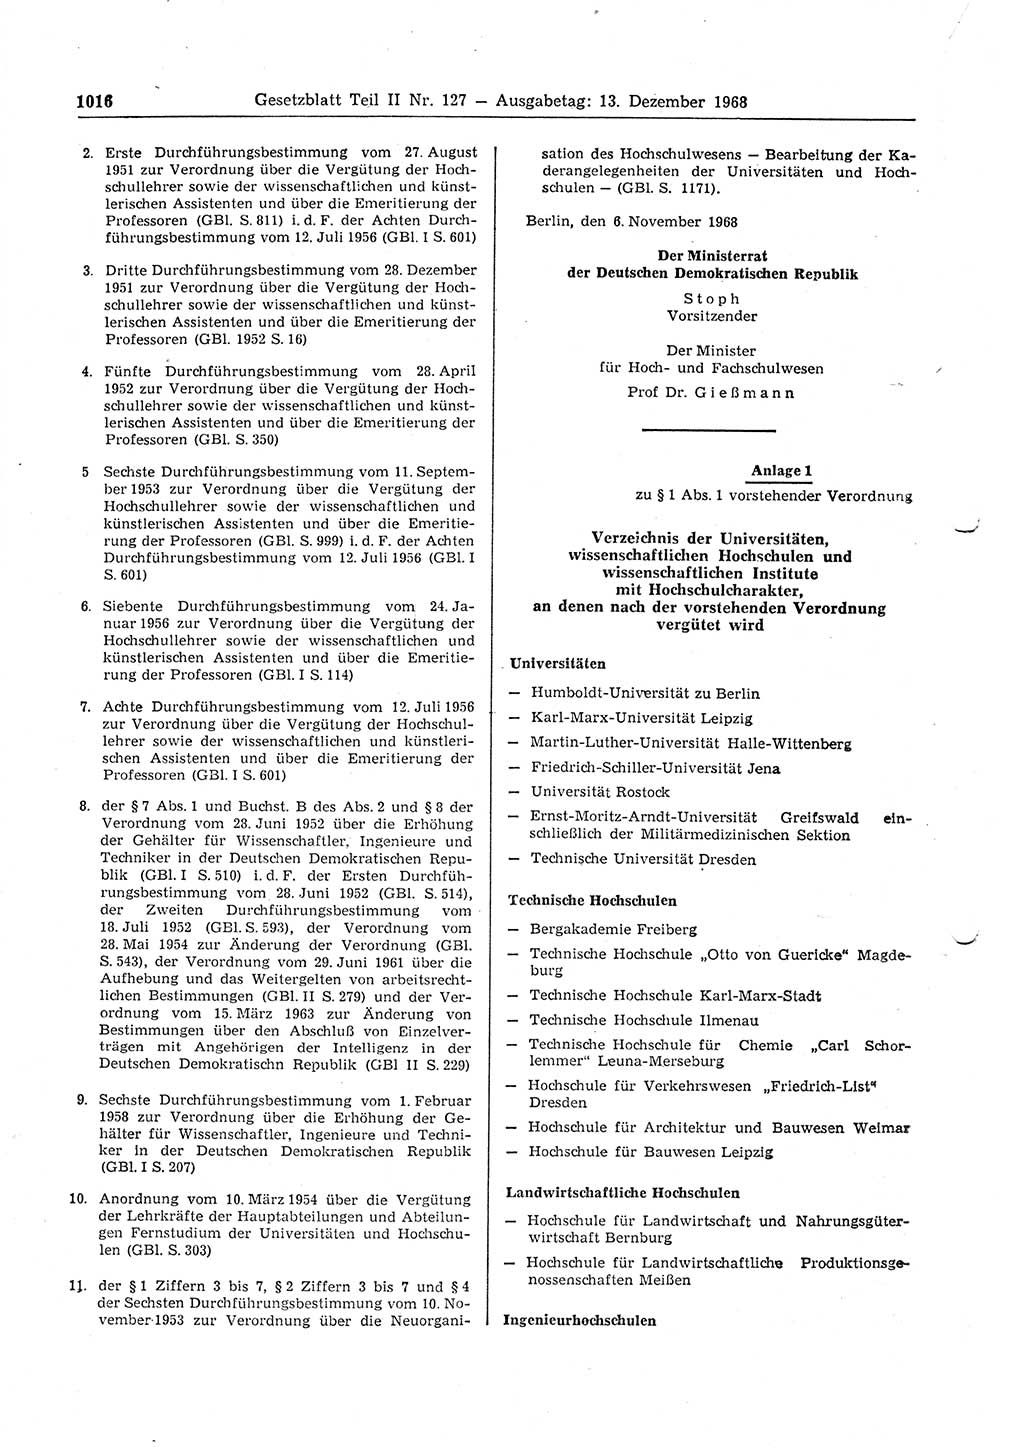 Gesetzblatt (GBl.) der Deutschen Demokratischen Republik (DDR) Teil ⅠⅠ 1968, Seite 1016 (GBl. DDR ⅠⅠ 1968, S. 1016)